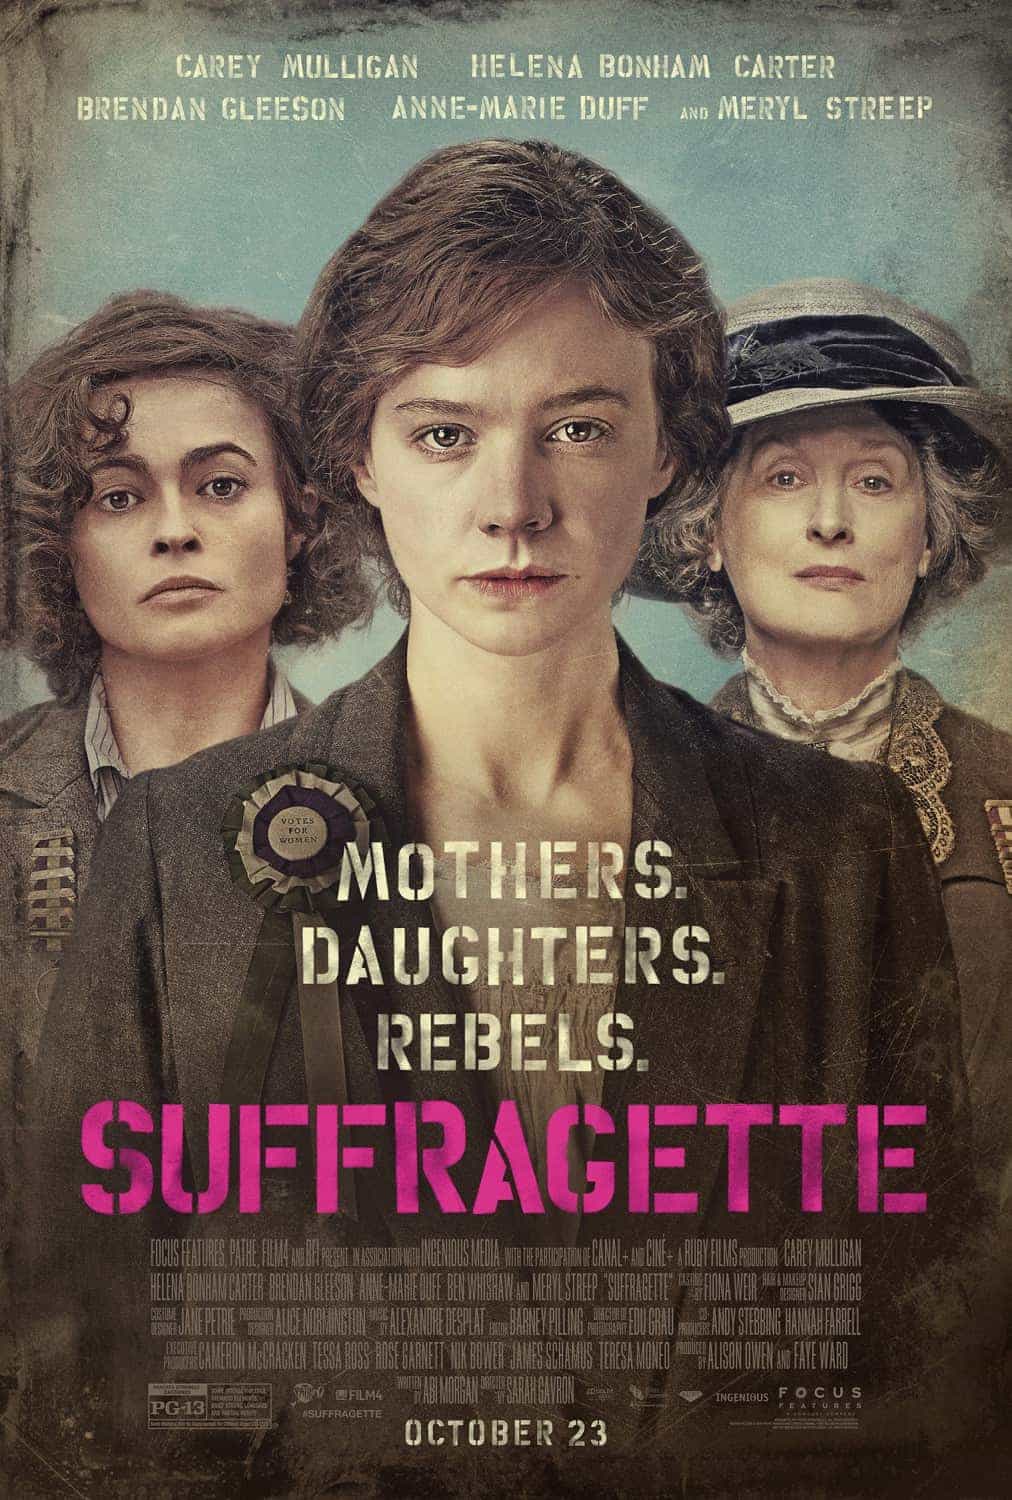 Teaser trailer for Suffragette, UK release date 30th October 2015